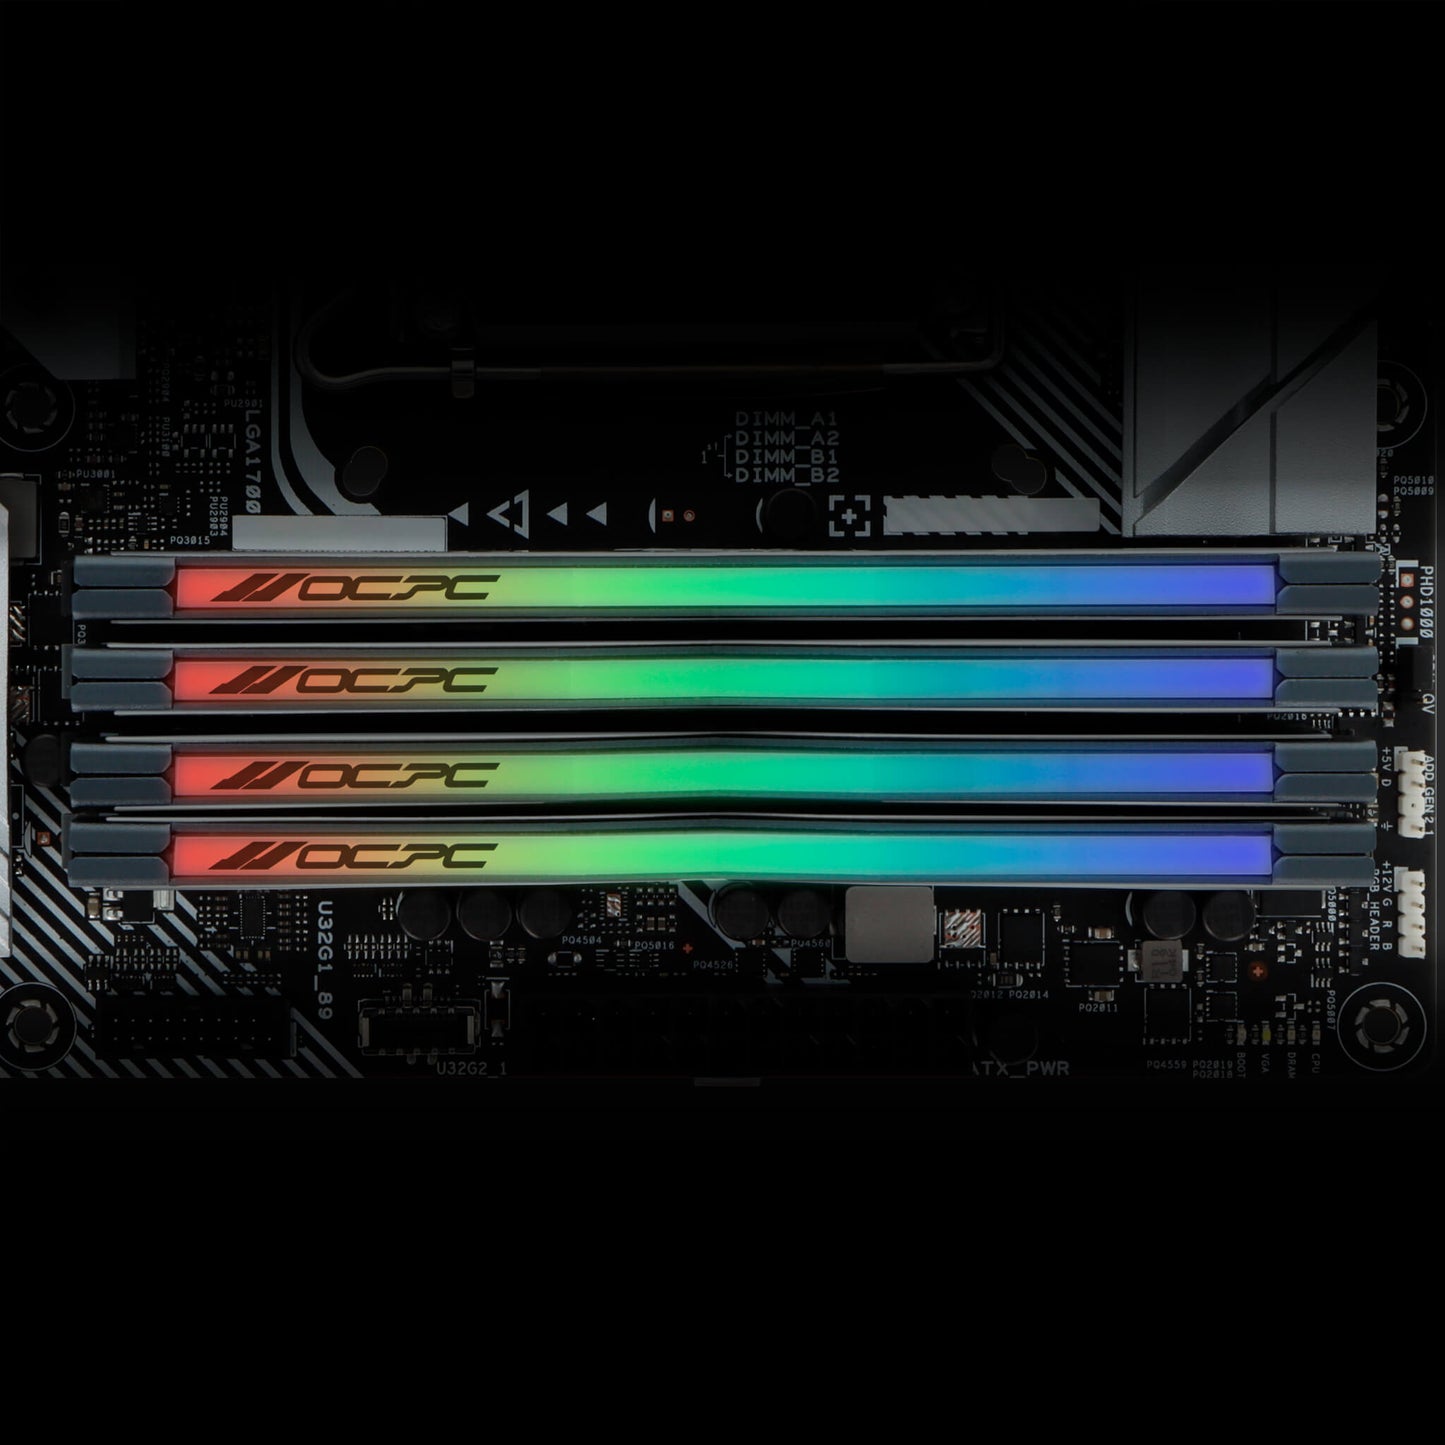 OCPC PISTA DDR5 RGB Memory - 16GB (2x8GB) - 5600MHz - CL36 - DIMM - Desktop